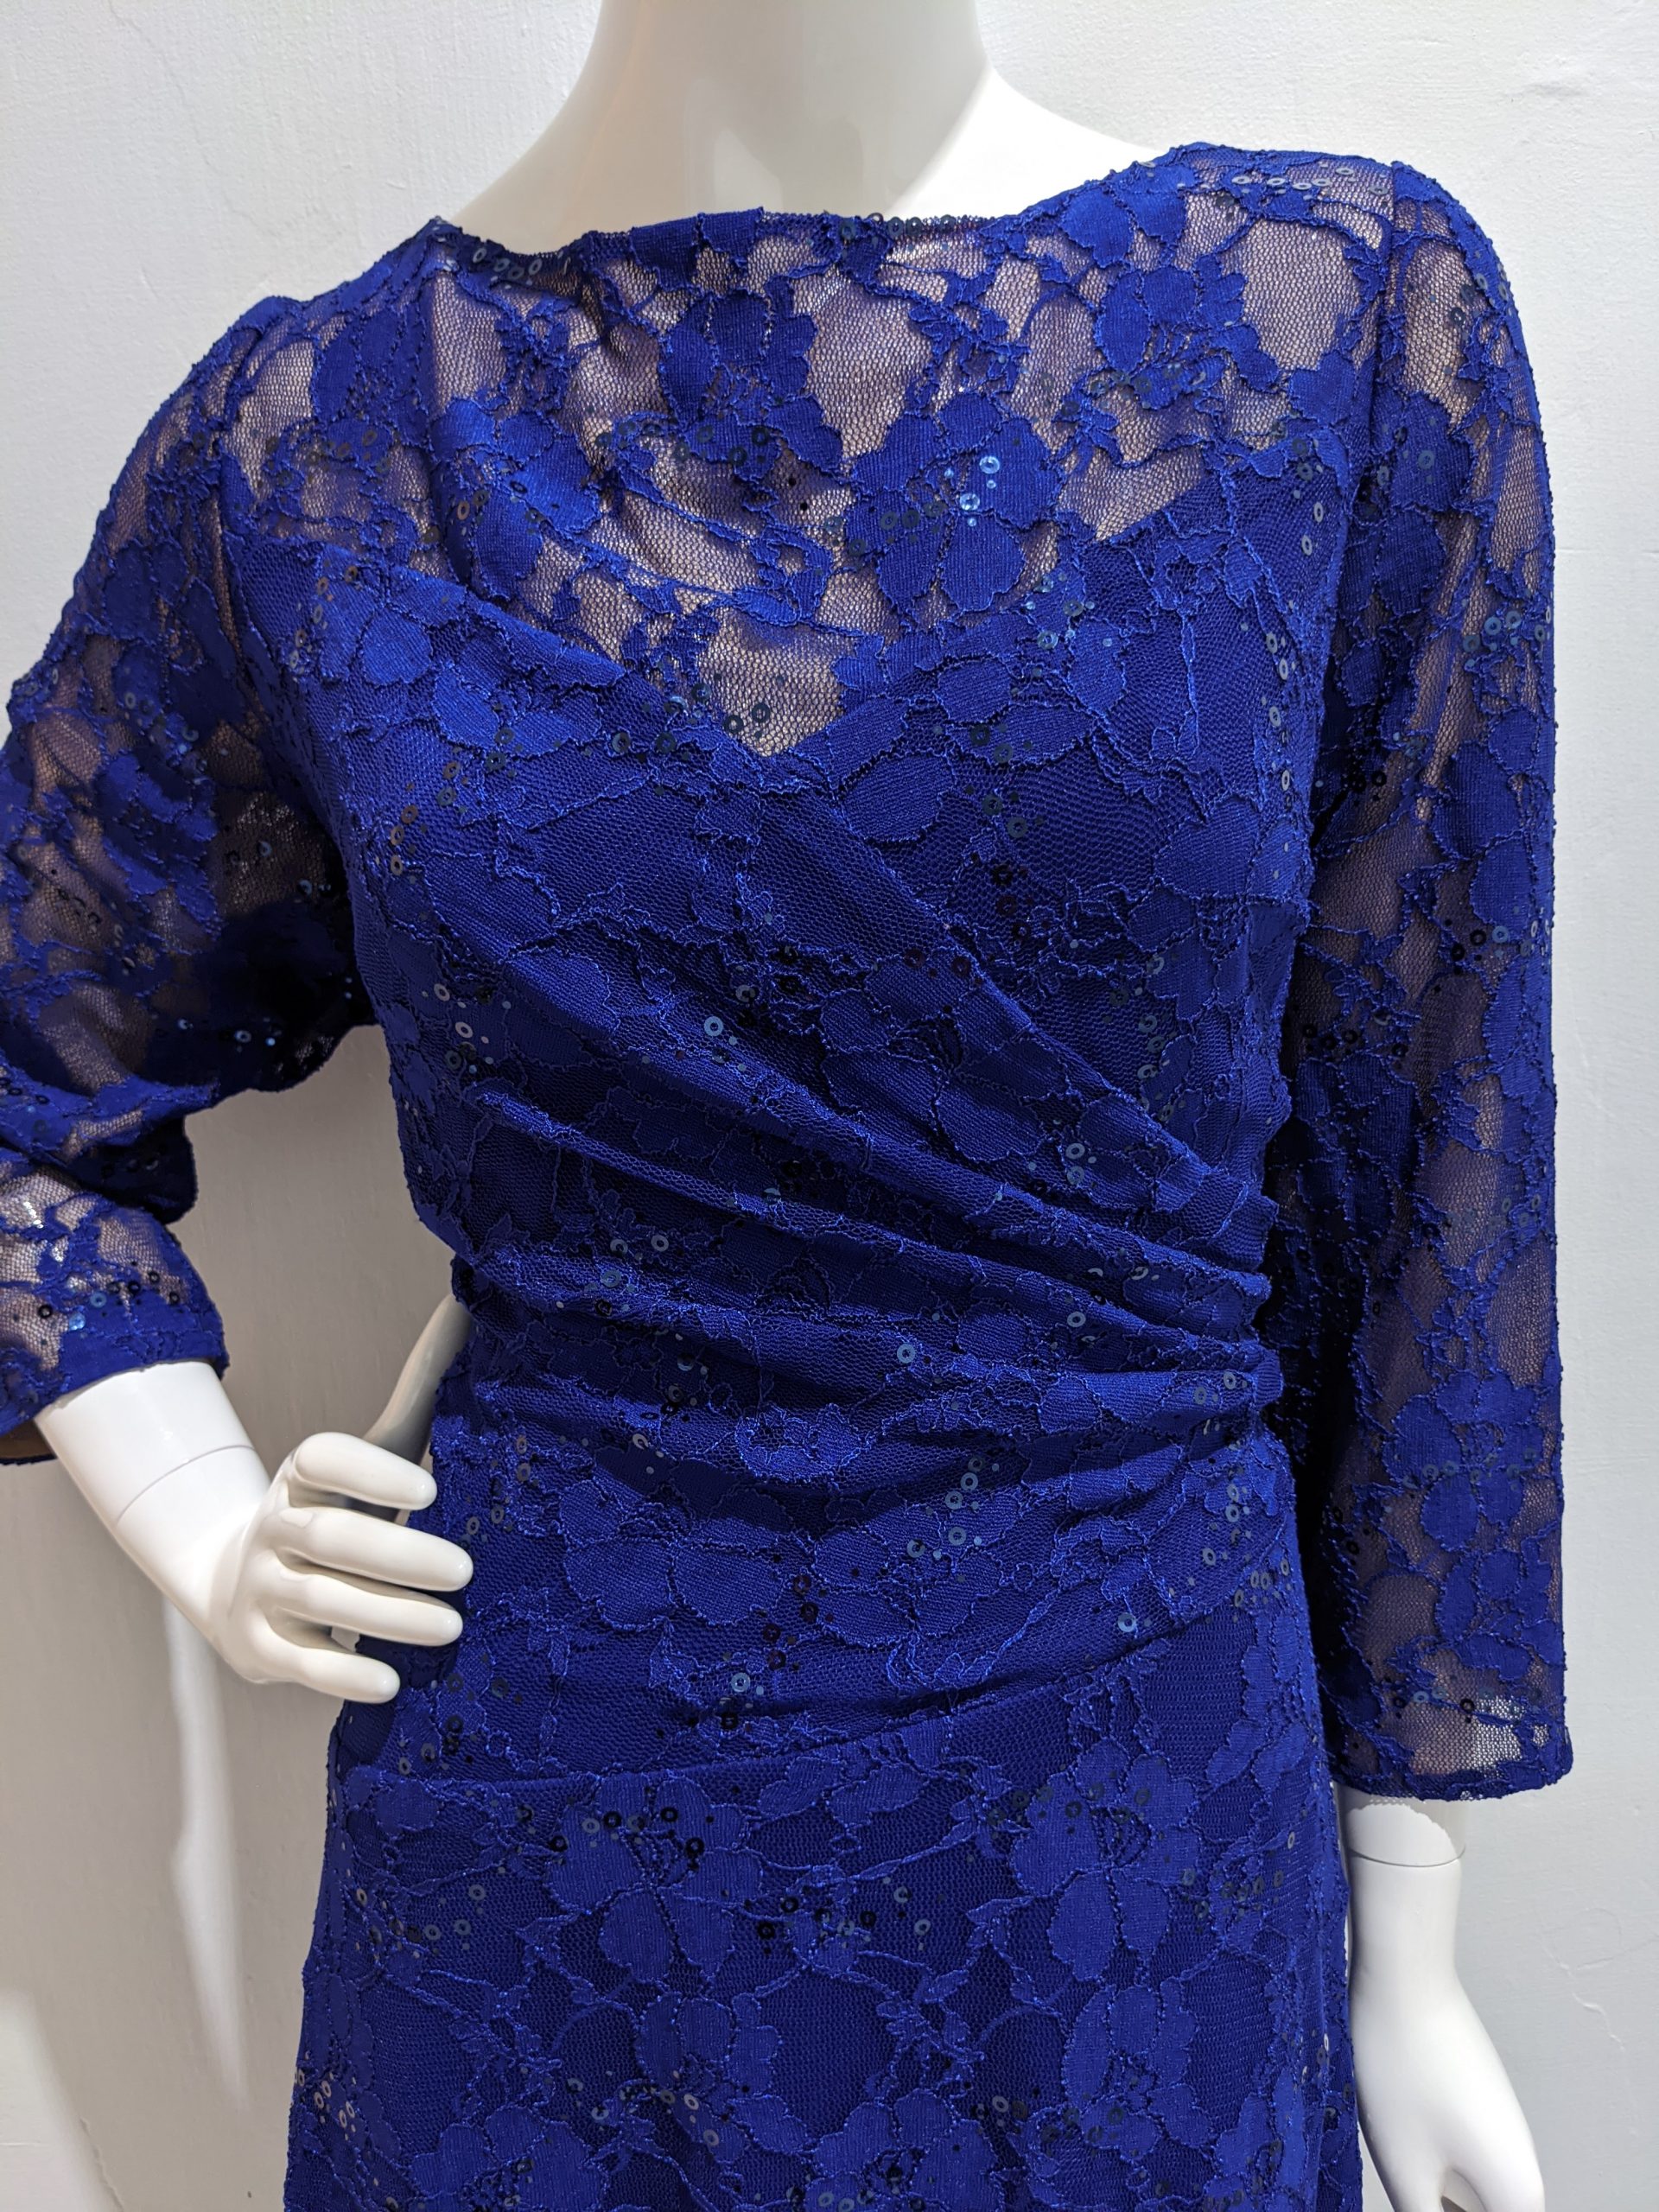 Ralph Lauren royal blue lace dress | Listittt.com